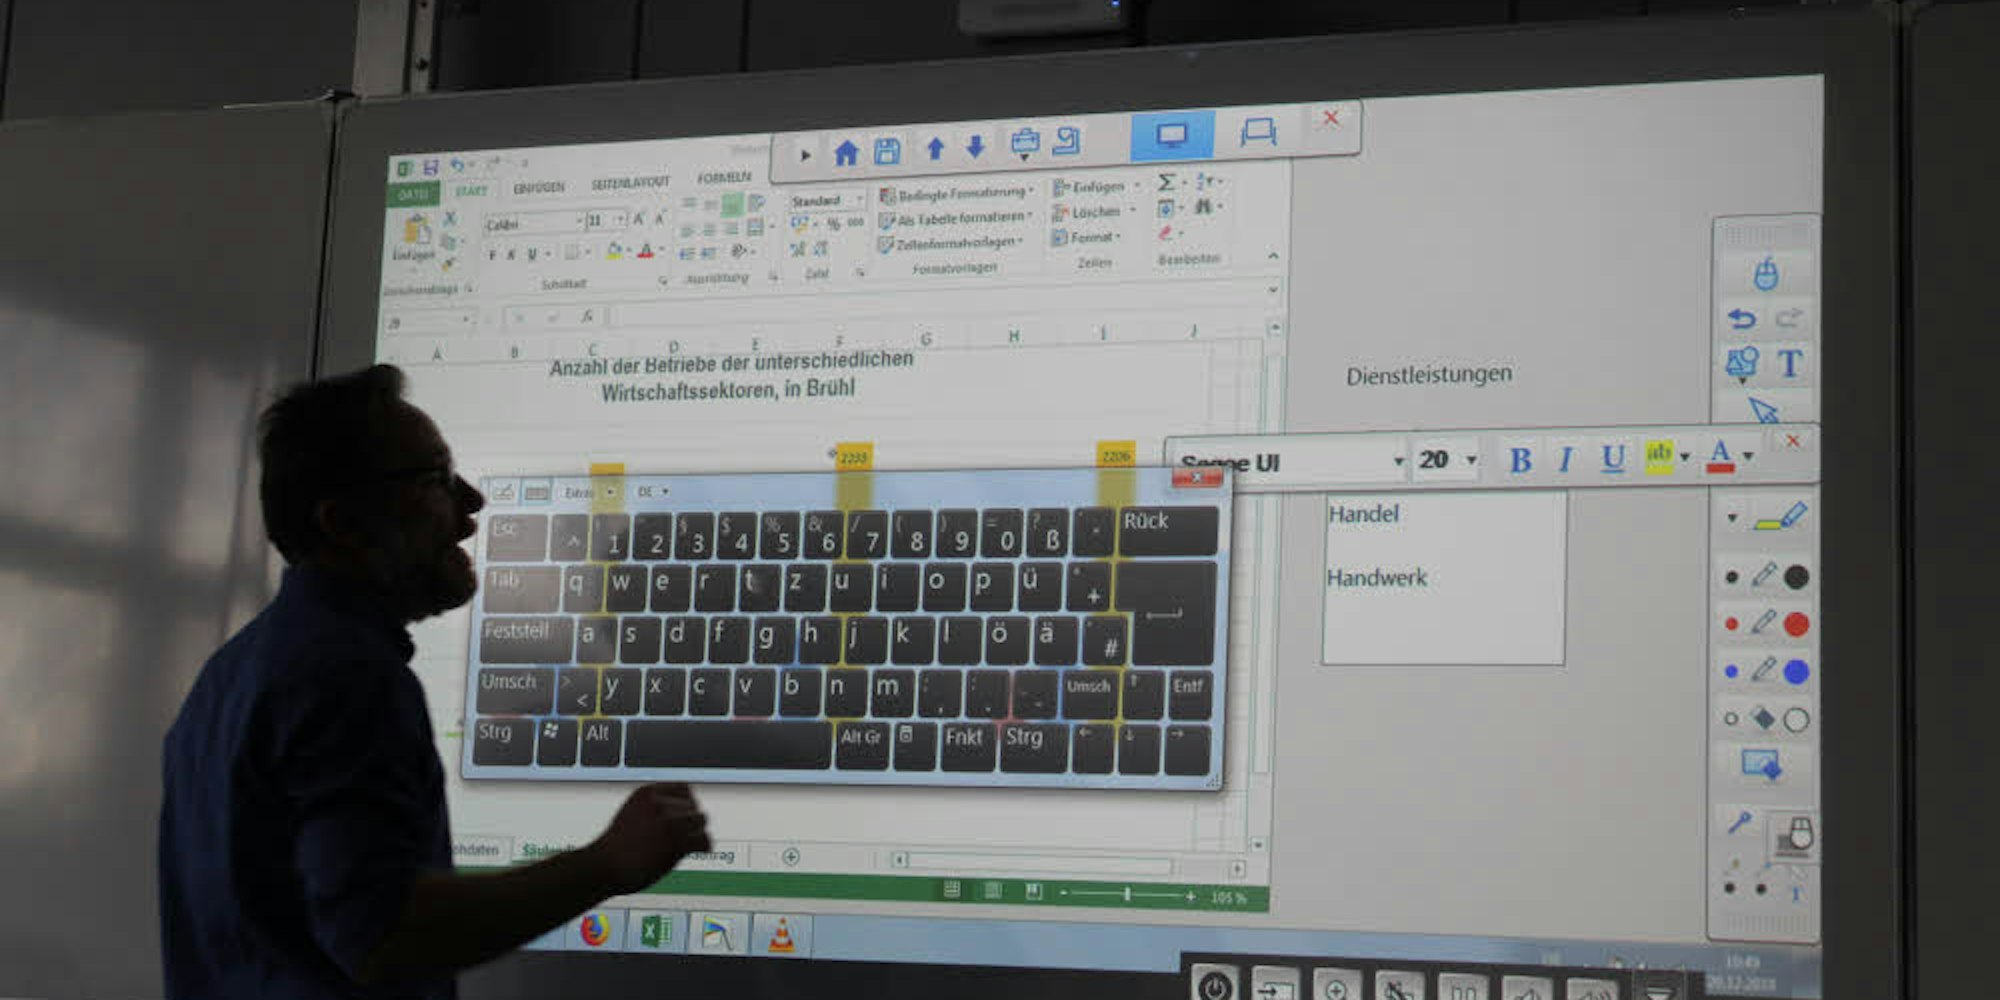 Über eine virtuelle Tastatur können die Lehrer in Dokumenten auf dem Whiteboard schreiben, hier Peter Orthey vom Karl-Schiller-Berufskolleg in Brühl.